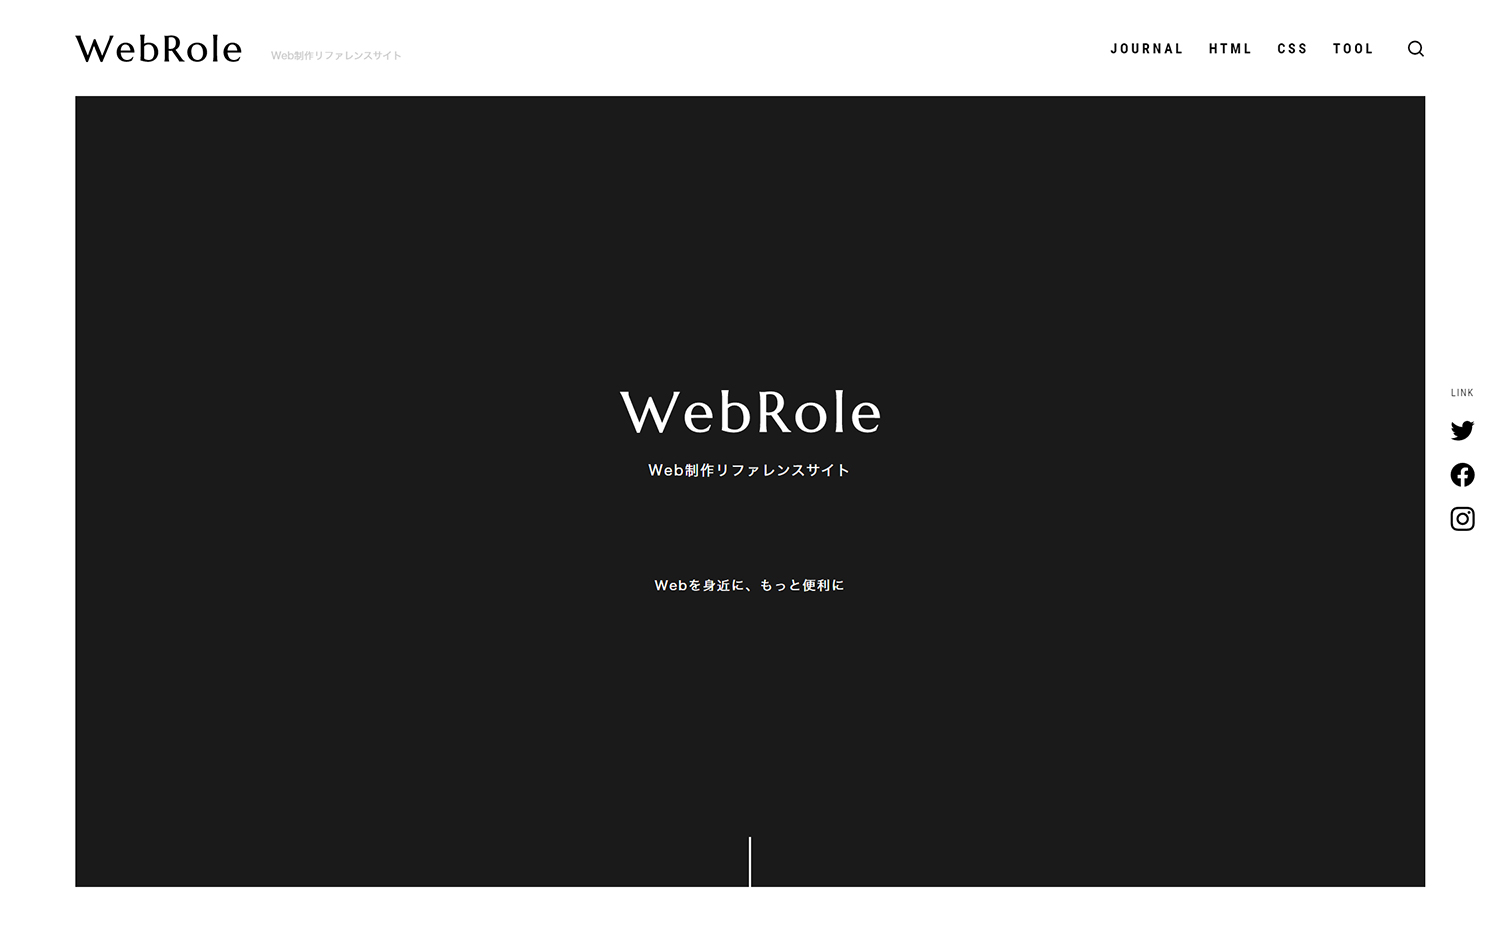 WebRole